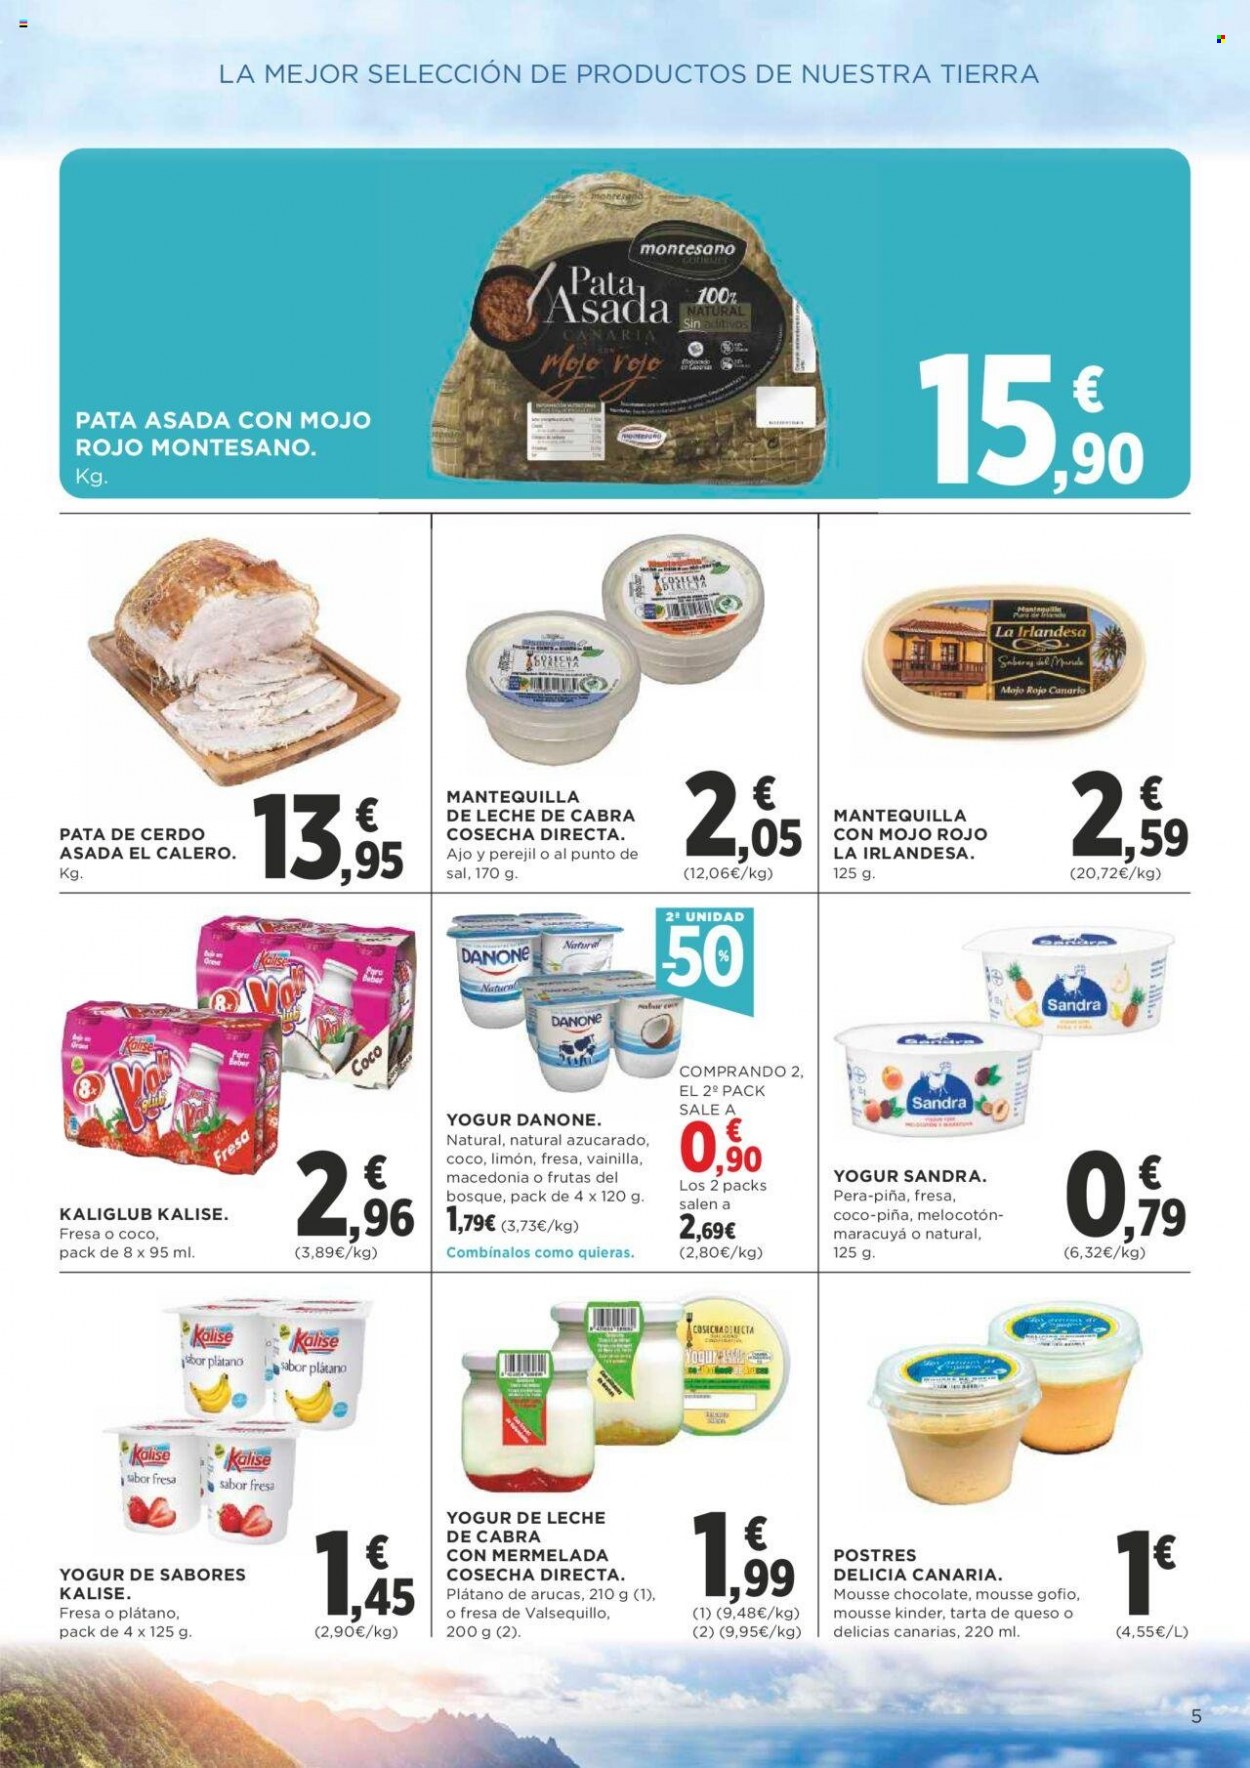 thumbnail - Folleto actual Supercor supermercados - 18/05/23 - 31/05/23 - Ventas - pata de cerdo, banana, mousse, postre, cheesecake, pata asada, yogur, Danone, Kinder, mantequilla, Gofio. Página 5.